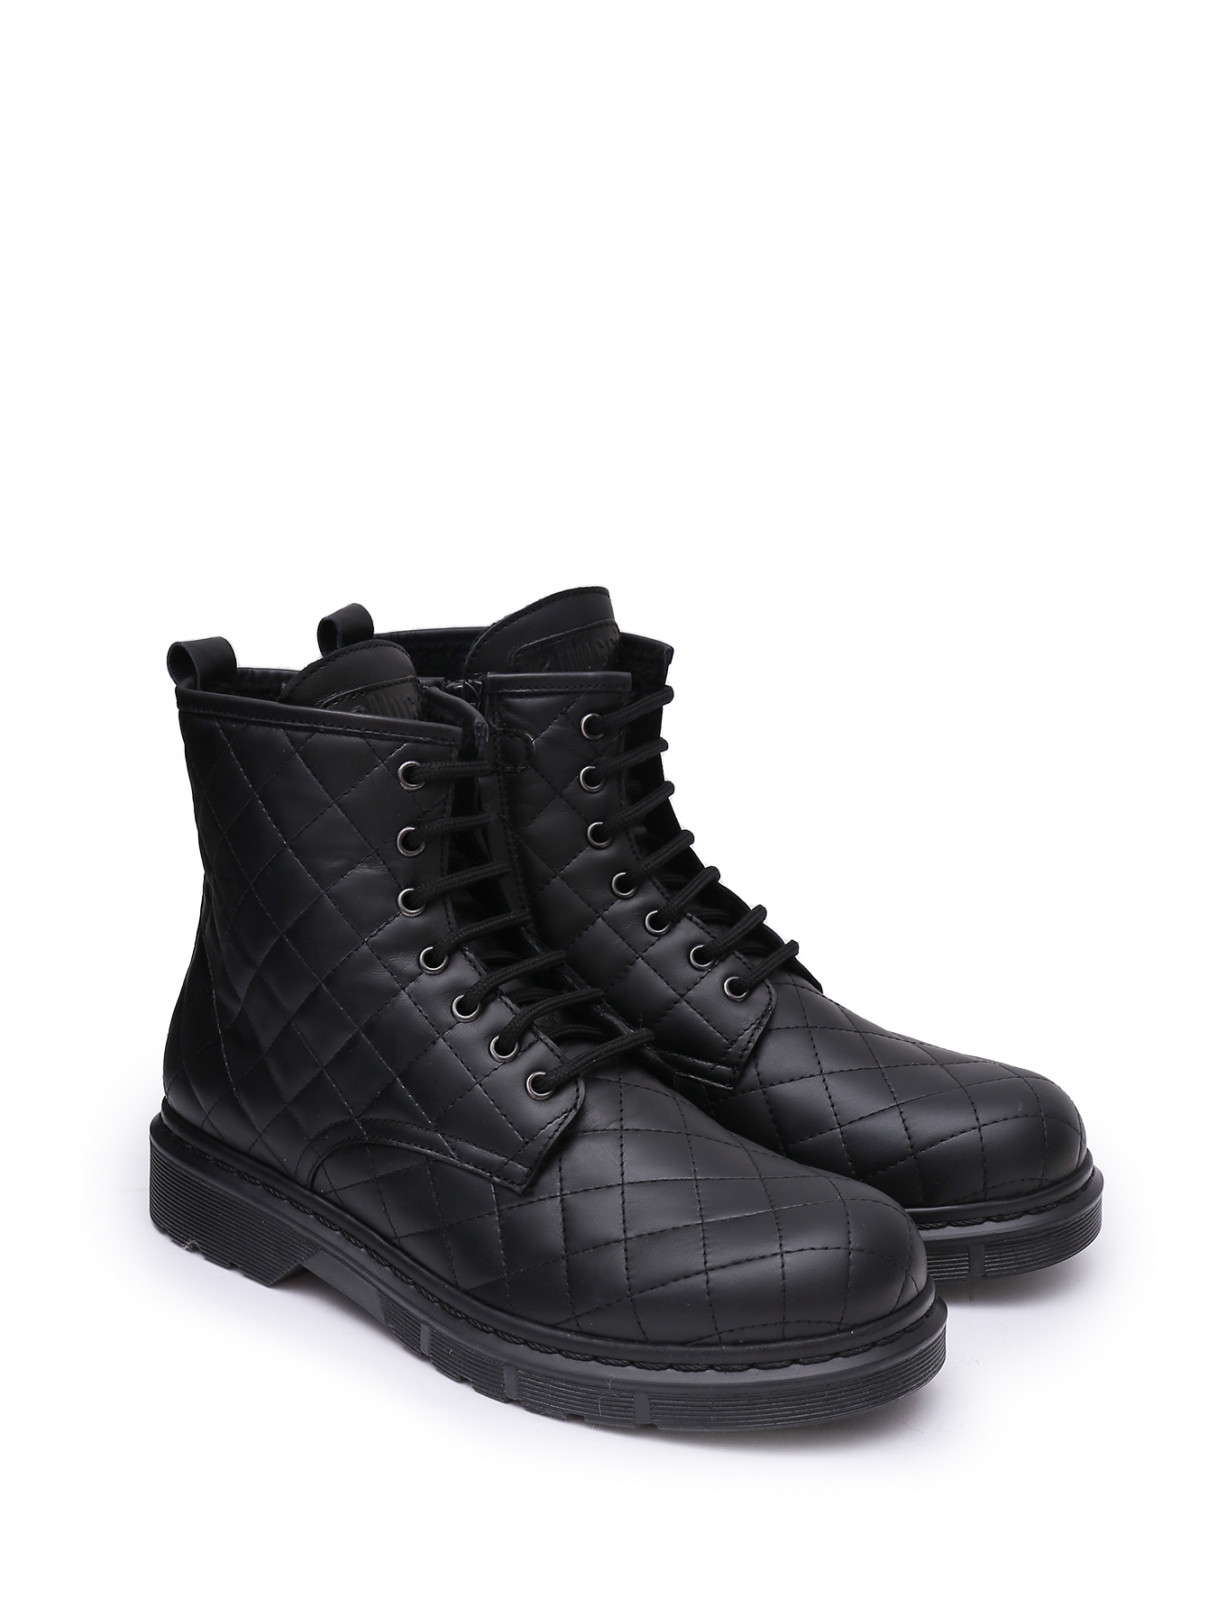 Высокие стеганые ботинки Gallucci  –  Общий вид  – Цвет:  Черный